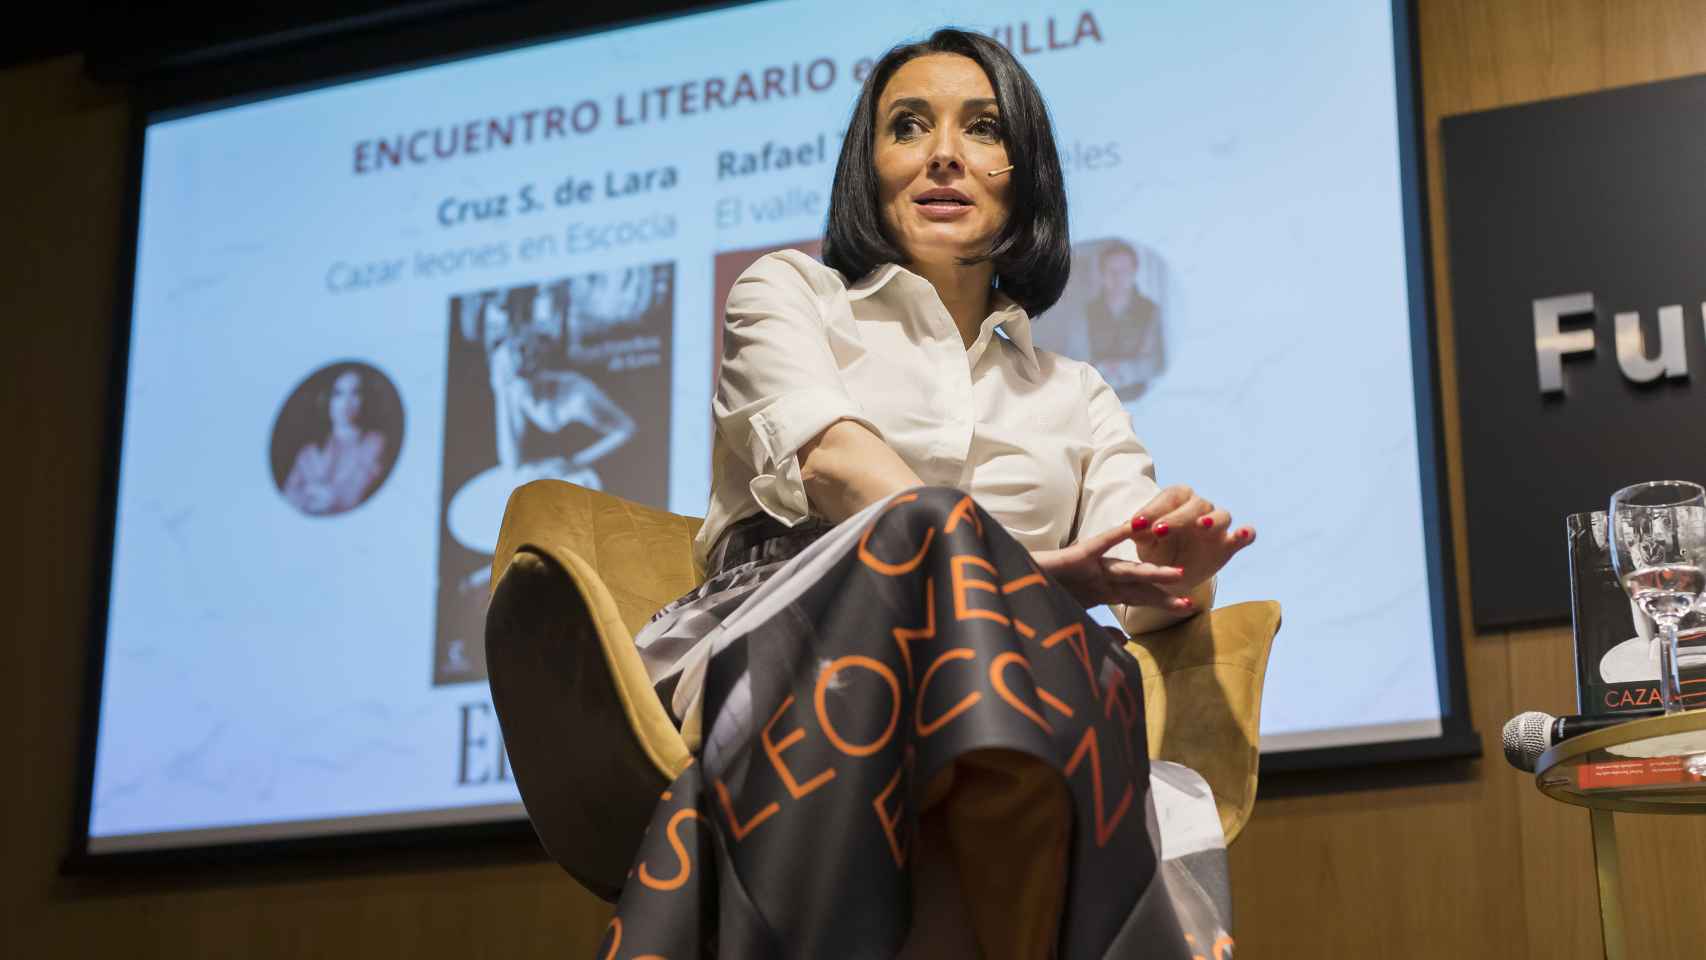 Cruz Sánchez de Lara en el encuentro literario.